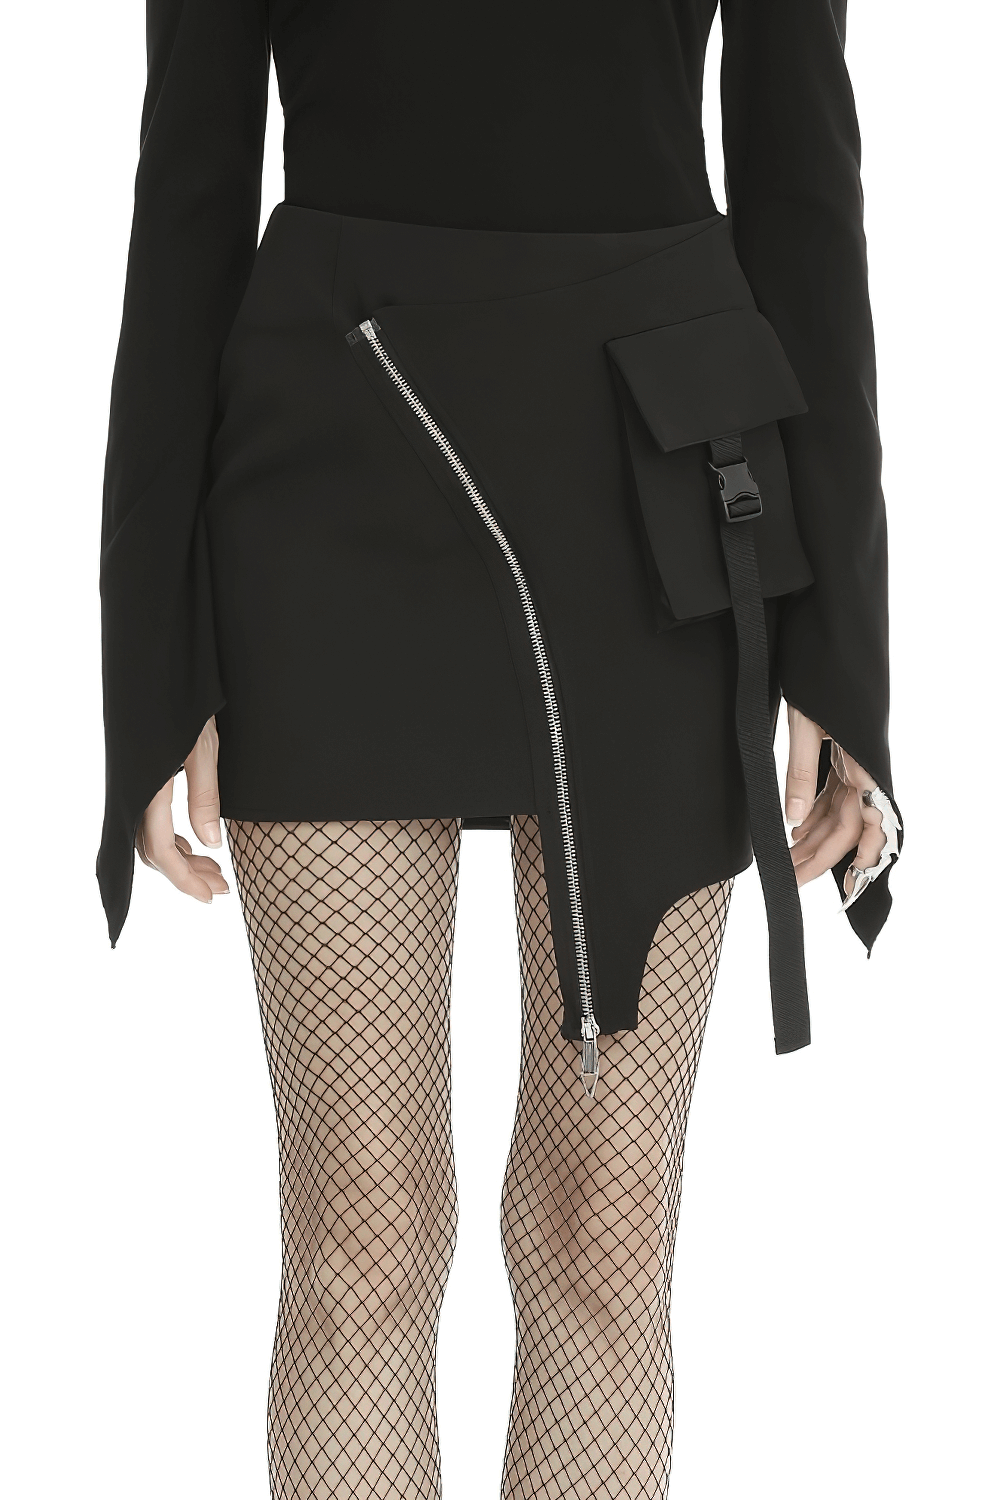 Sleek Black Skirt with Zipper and Belt Detailing